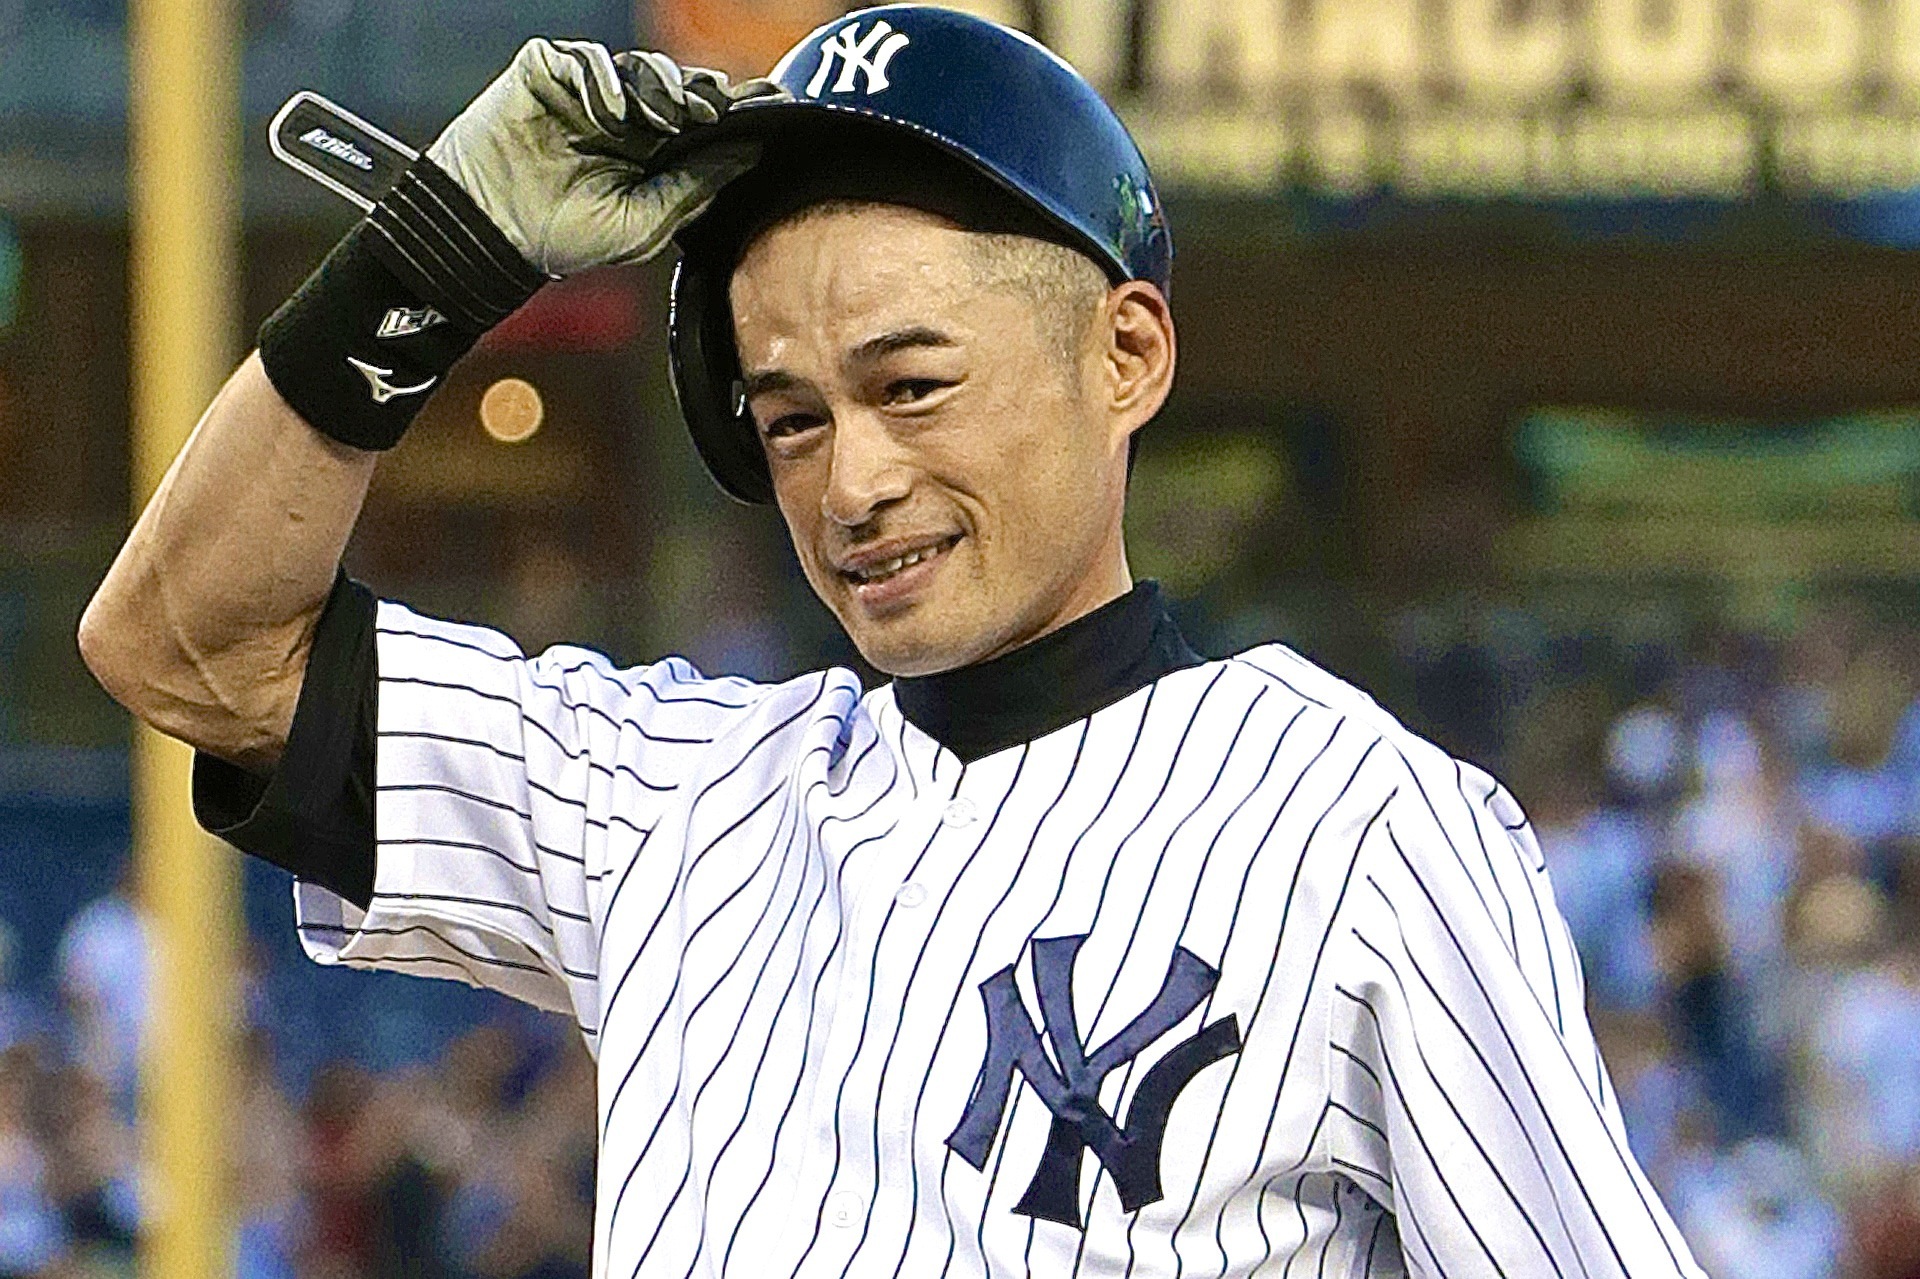 Yankees' Ichiro Suzuki Records 4,000th Hit in Pro Career